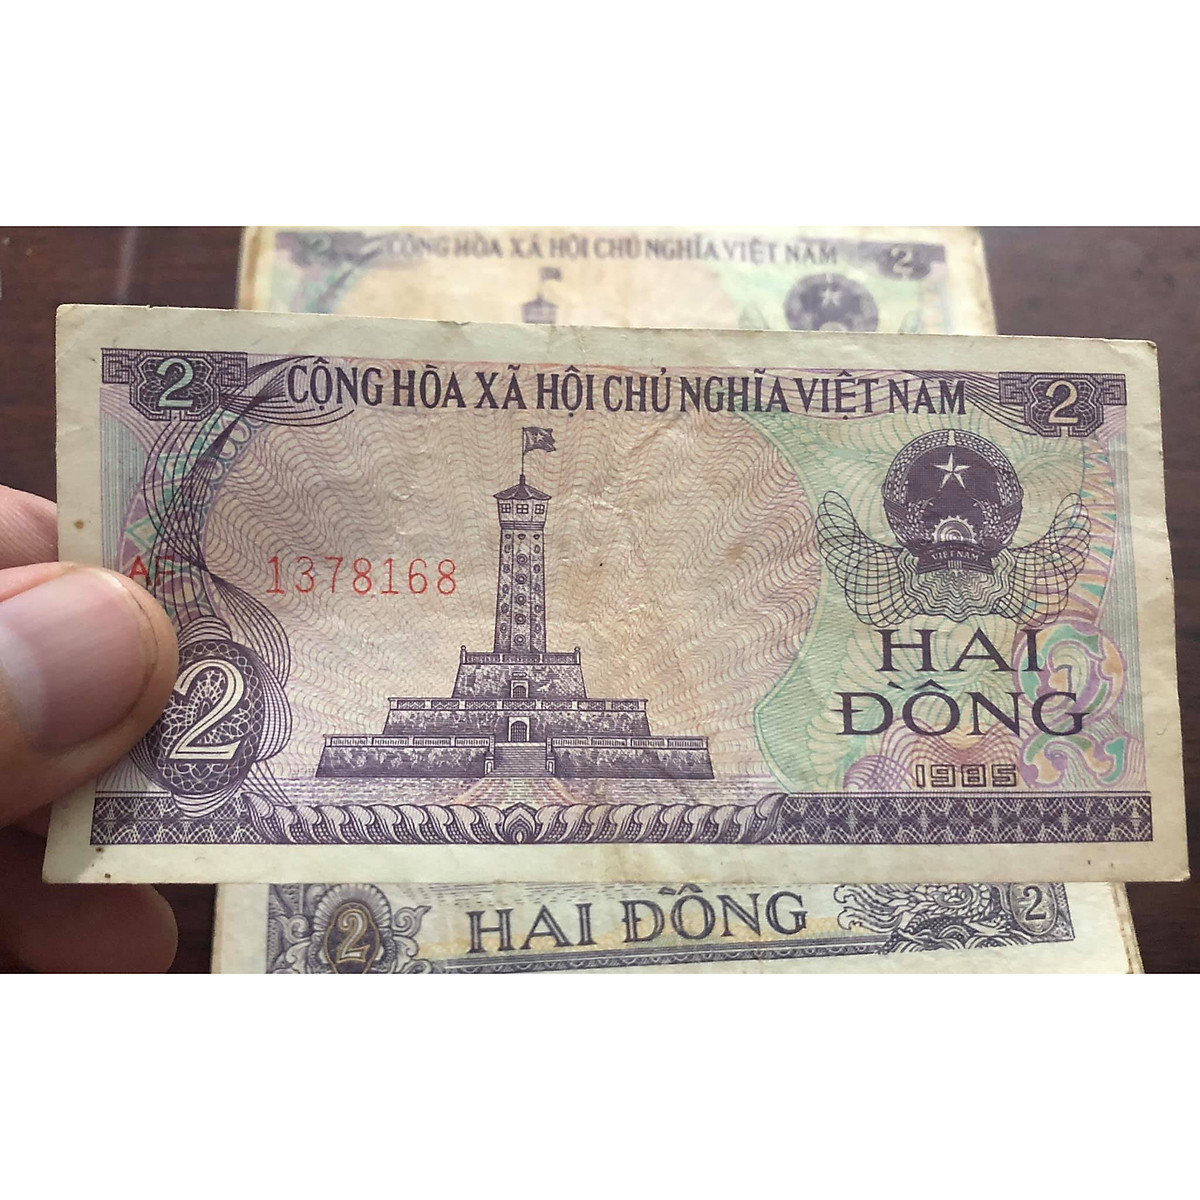 01 tờ tiền mệnh giá 2 đồng Việt Nam xưa, tặng kèm bao nilong bảo quản - Chất lượng như hình, Tiền xưa thật 100%